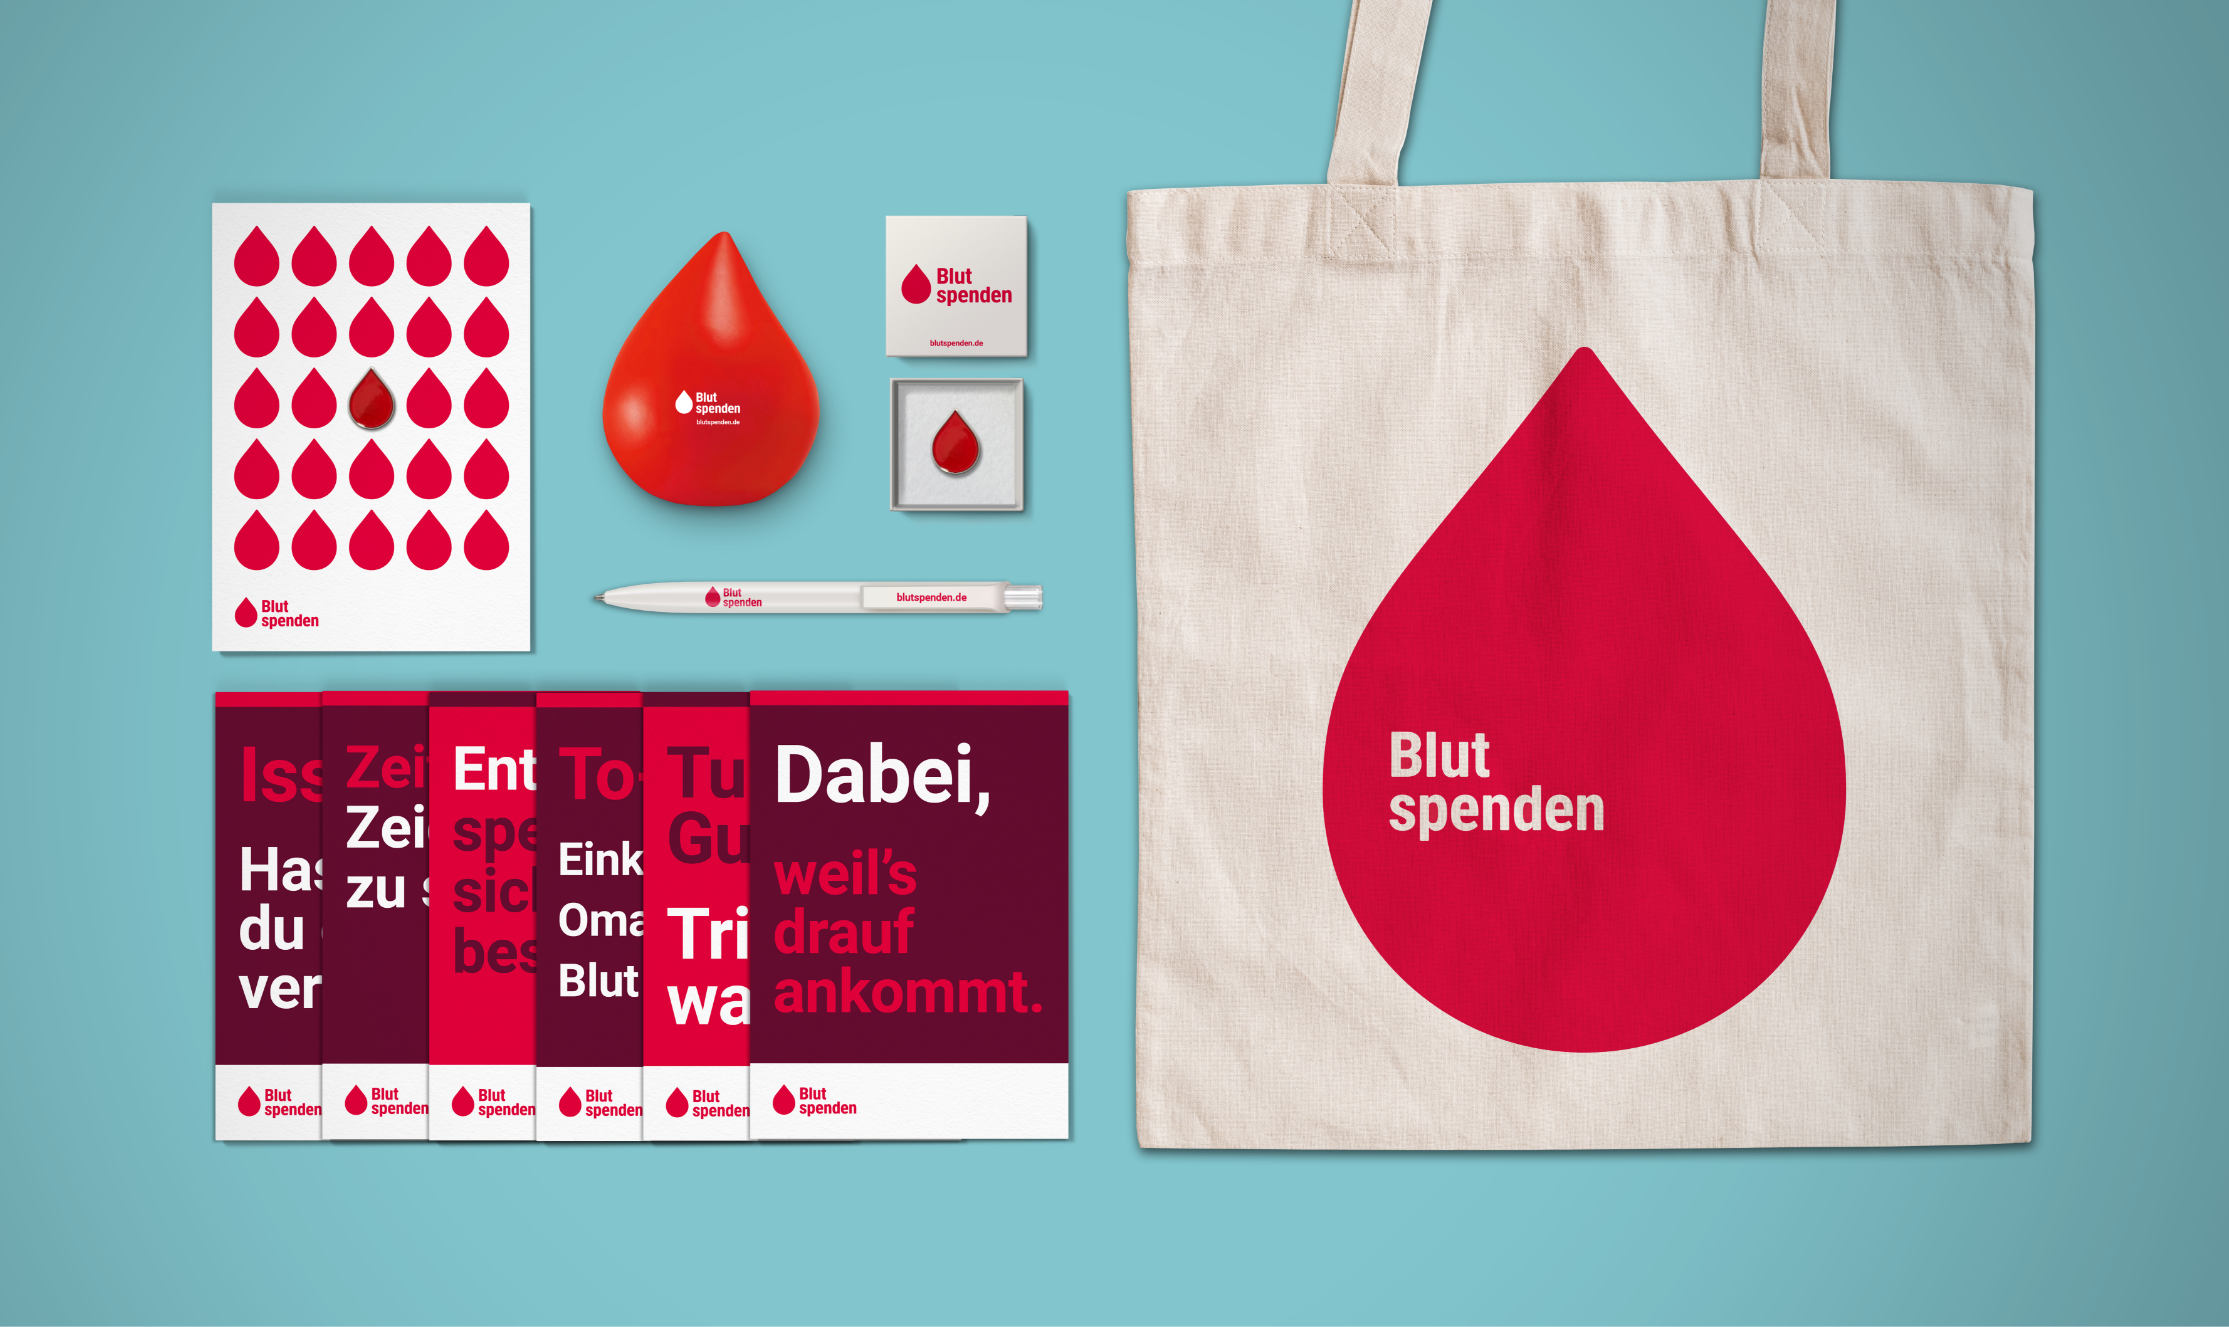 Mehrere Give-Aways wie Jutebeutel, Postkarten und einen Kugelschreiber im neuen Design der Blutspenden-Kampagne.